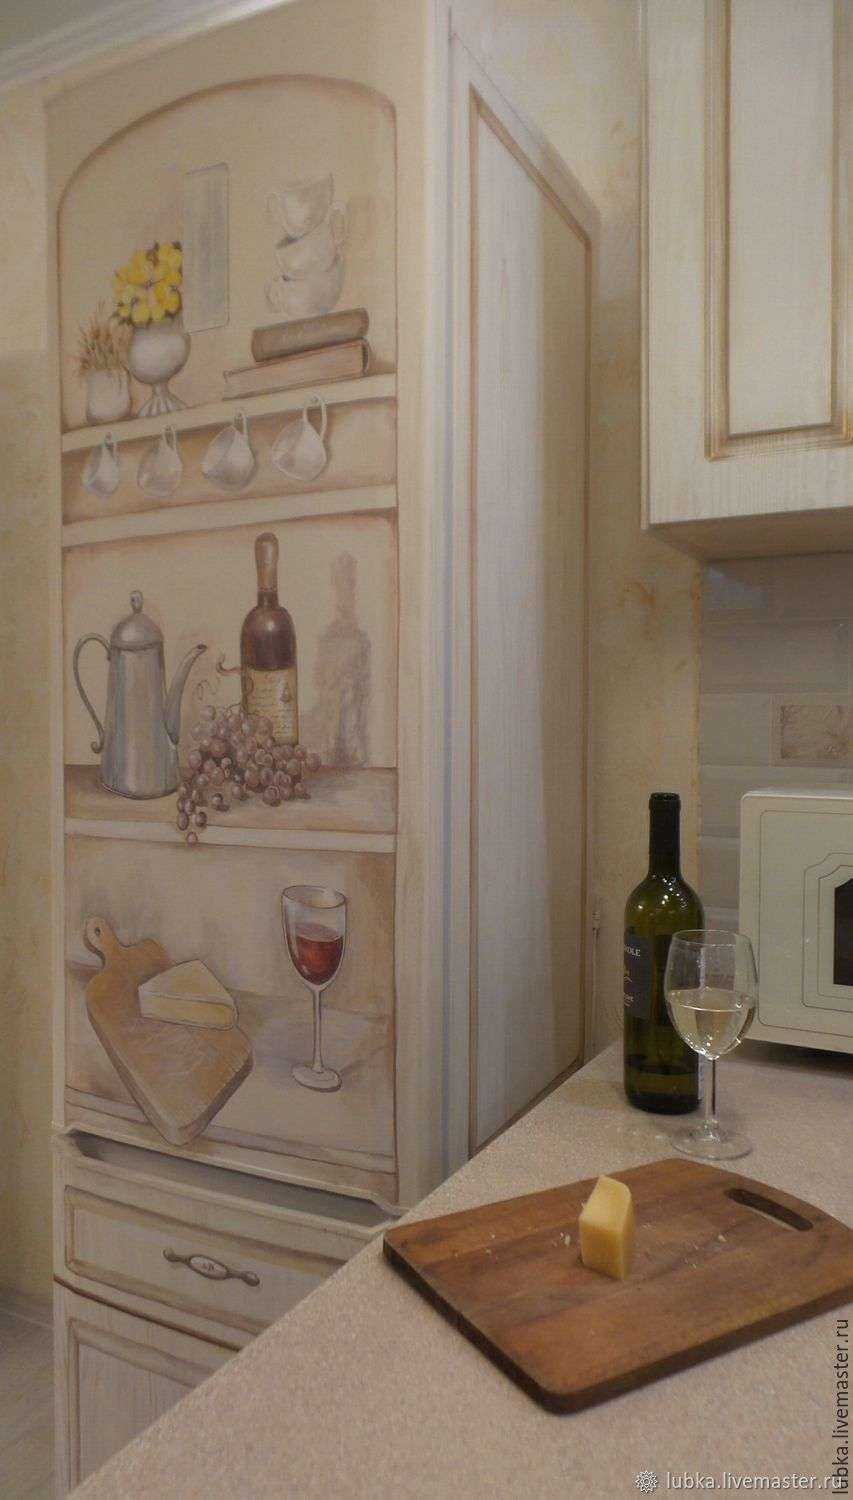 Можно ли покрасить холодильник внутри. реально ли покрасить старый холодильник, чтобы он стал как новый? как покрасить холодильник в домашних условиях